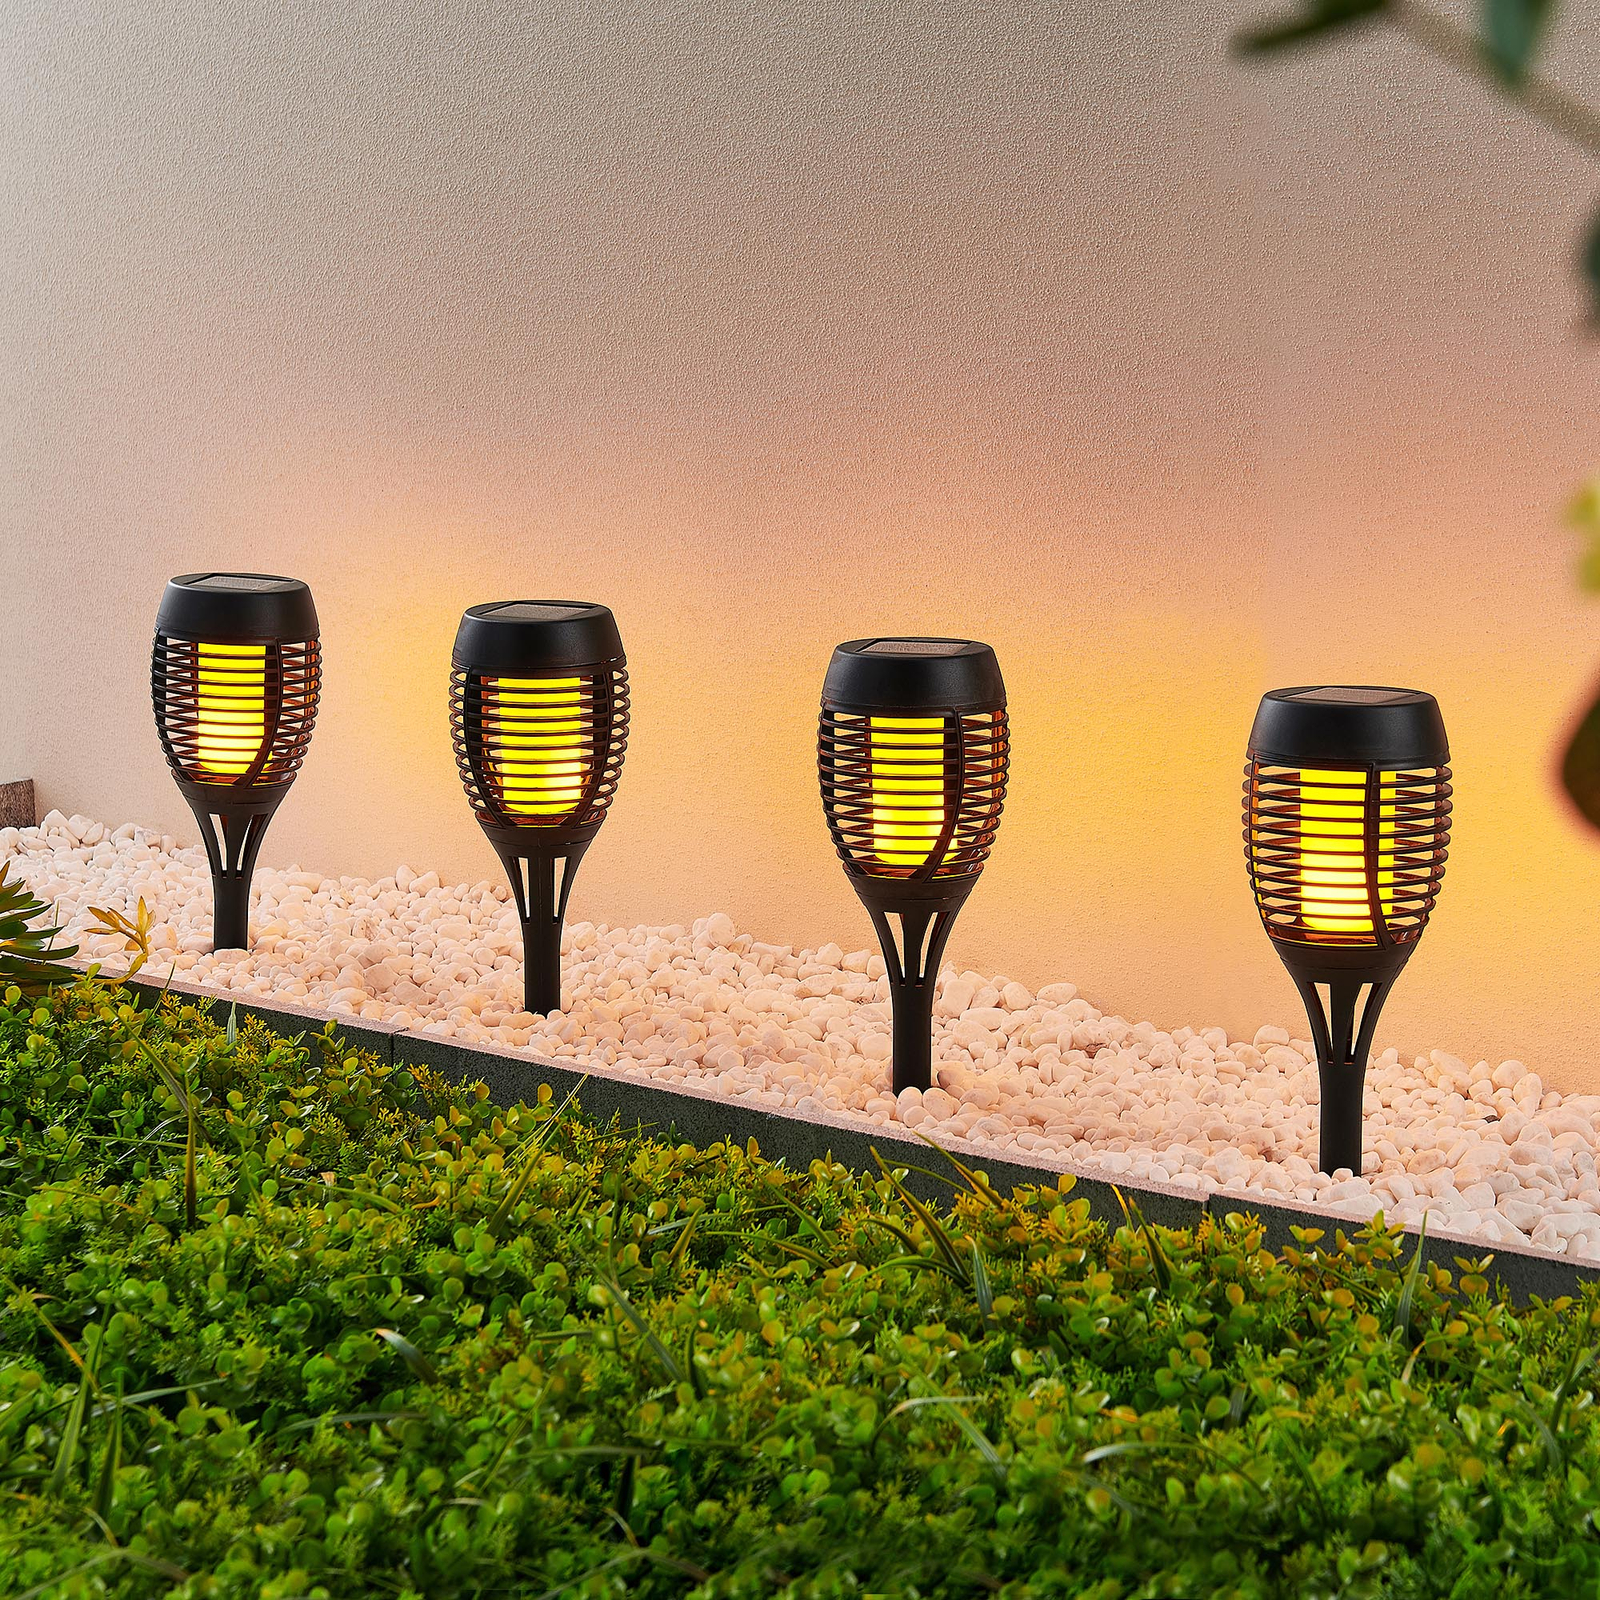 Lindby sanja solarfackel 4er pincho de tierra exterior lámpara antorcha de jardín